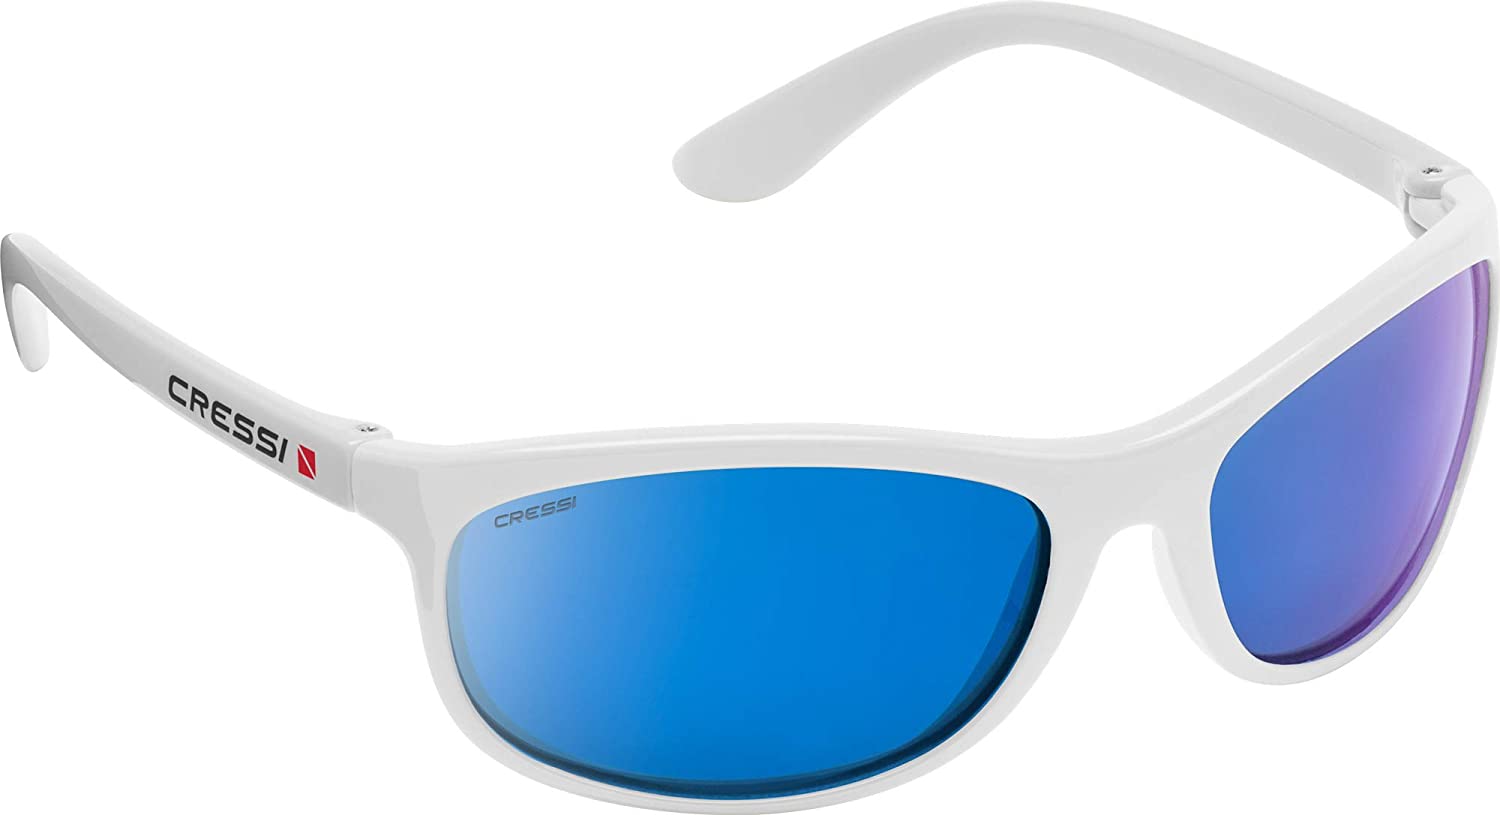 CRESSI ROCKER FLOATING MIRRORED verspiegelte Sonnenbrille Sportbrille